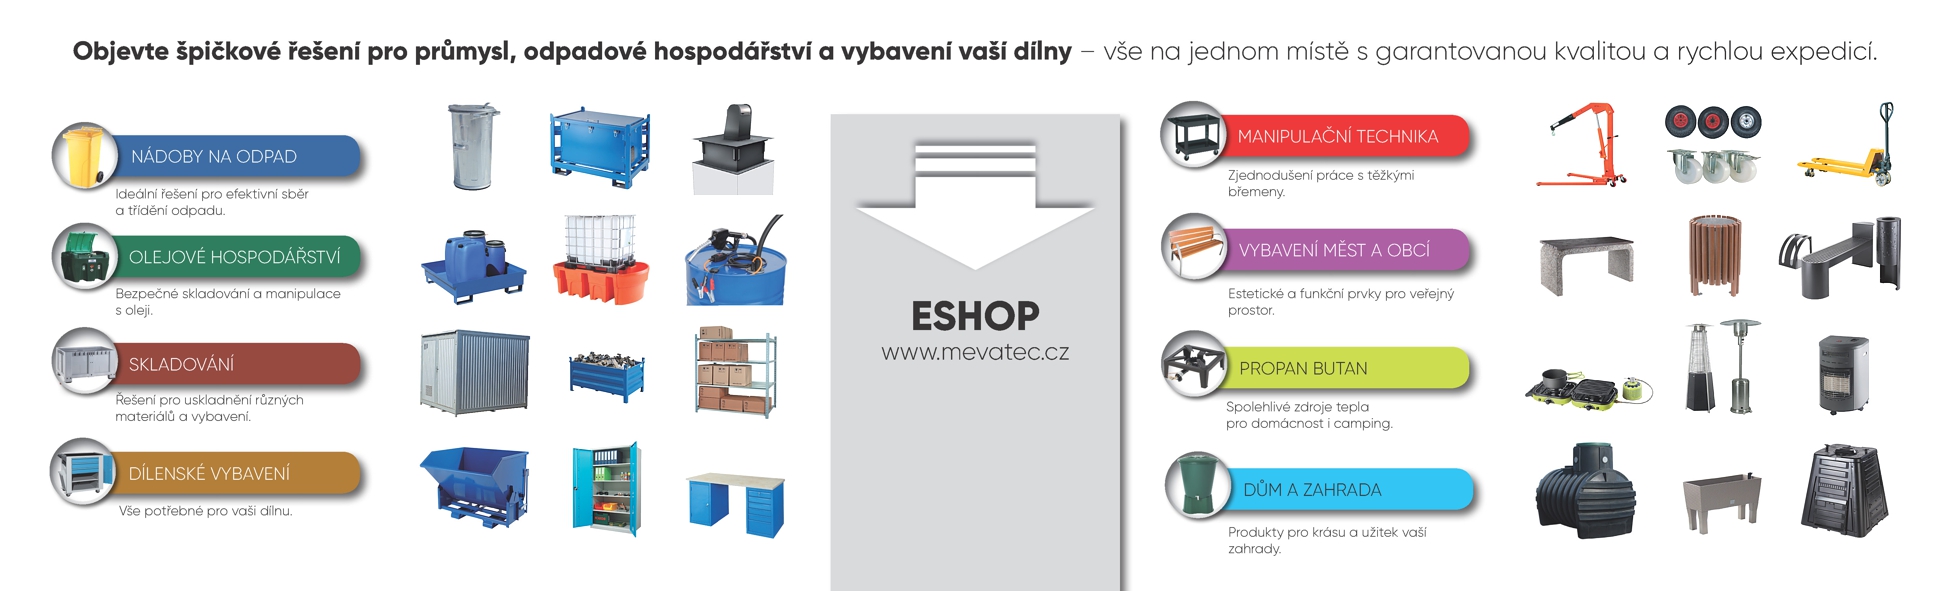 Eshop www.mevatec.cz